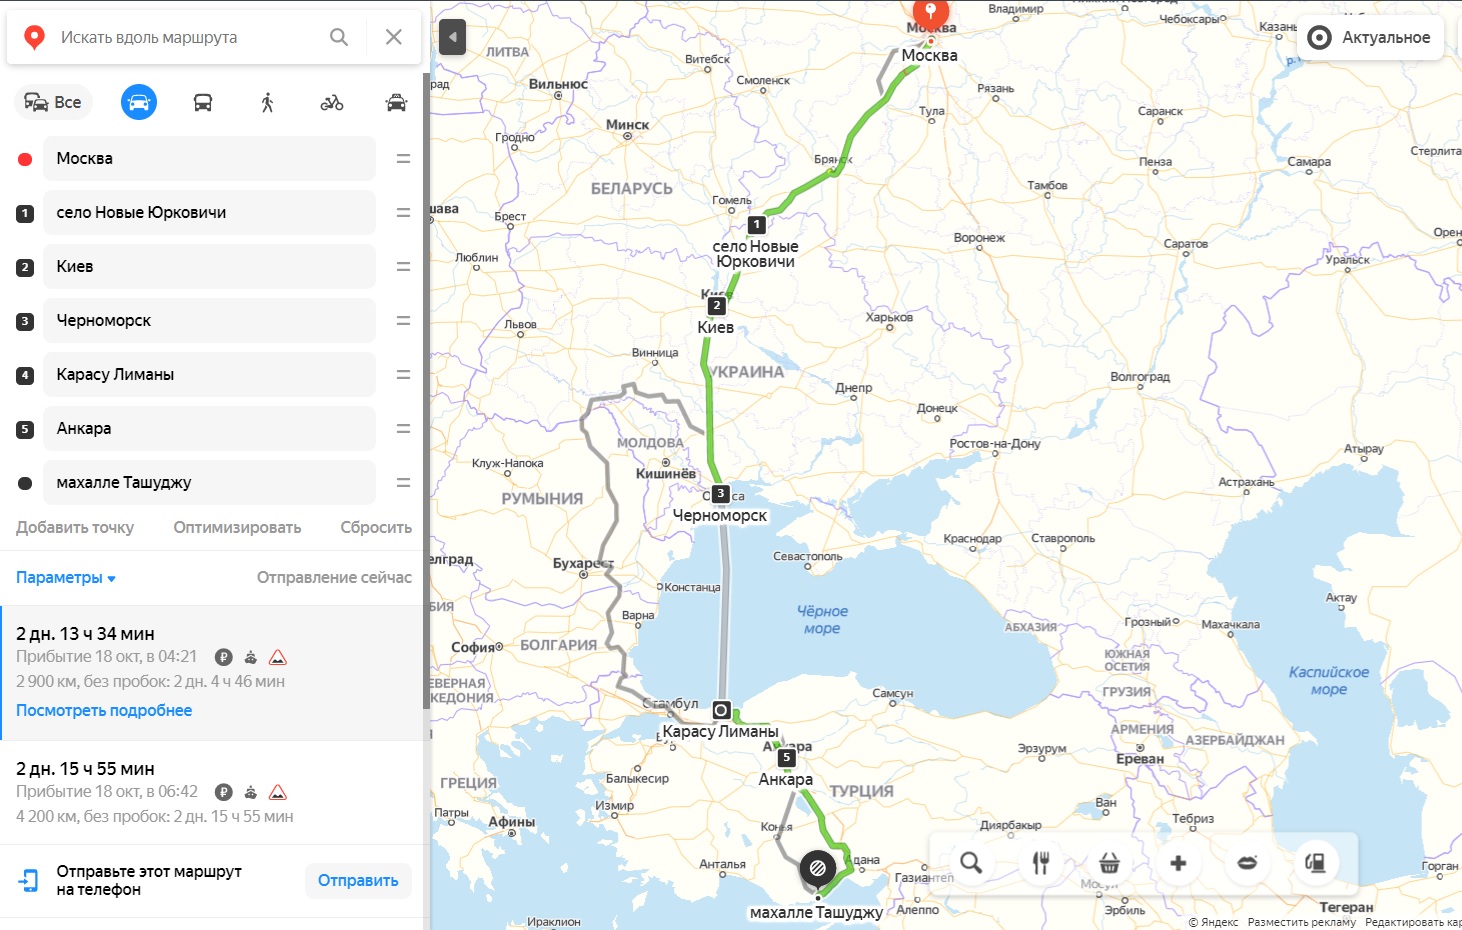 Маршрут на машине в Турцию из Москвы 2020 и 2021 